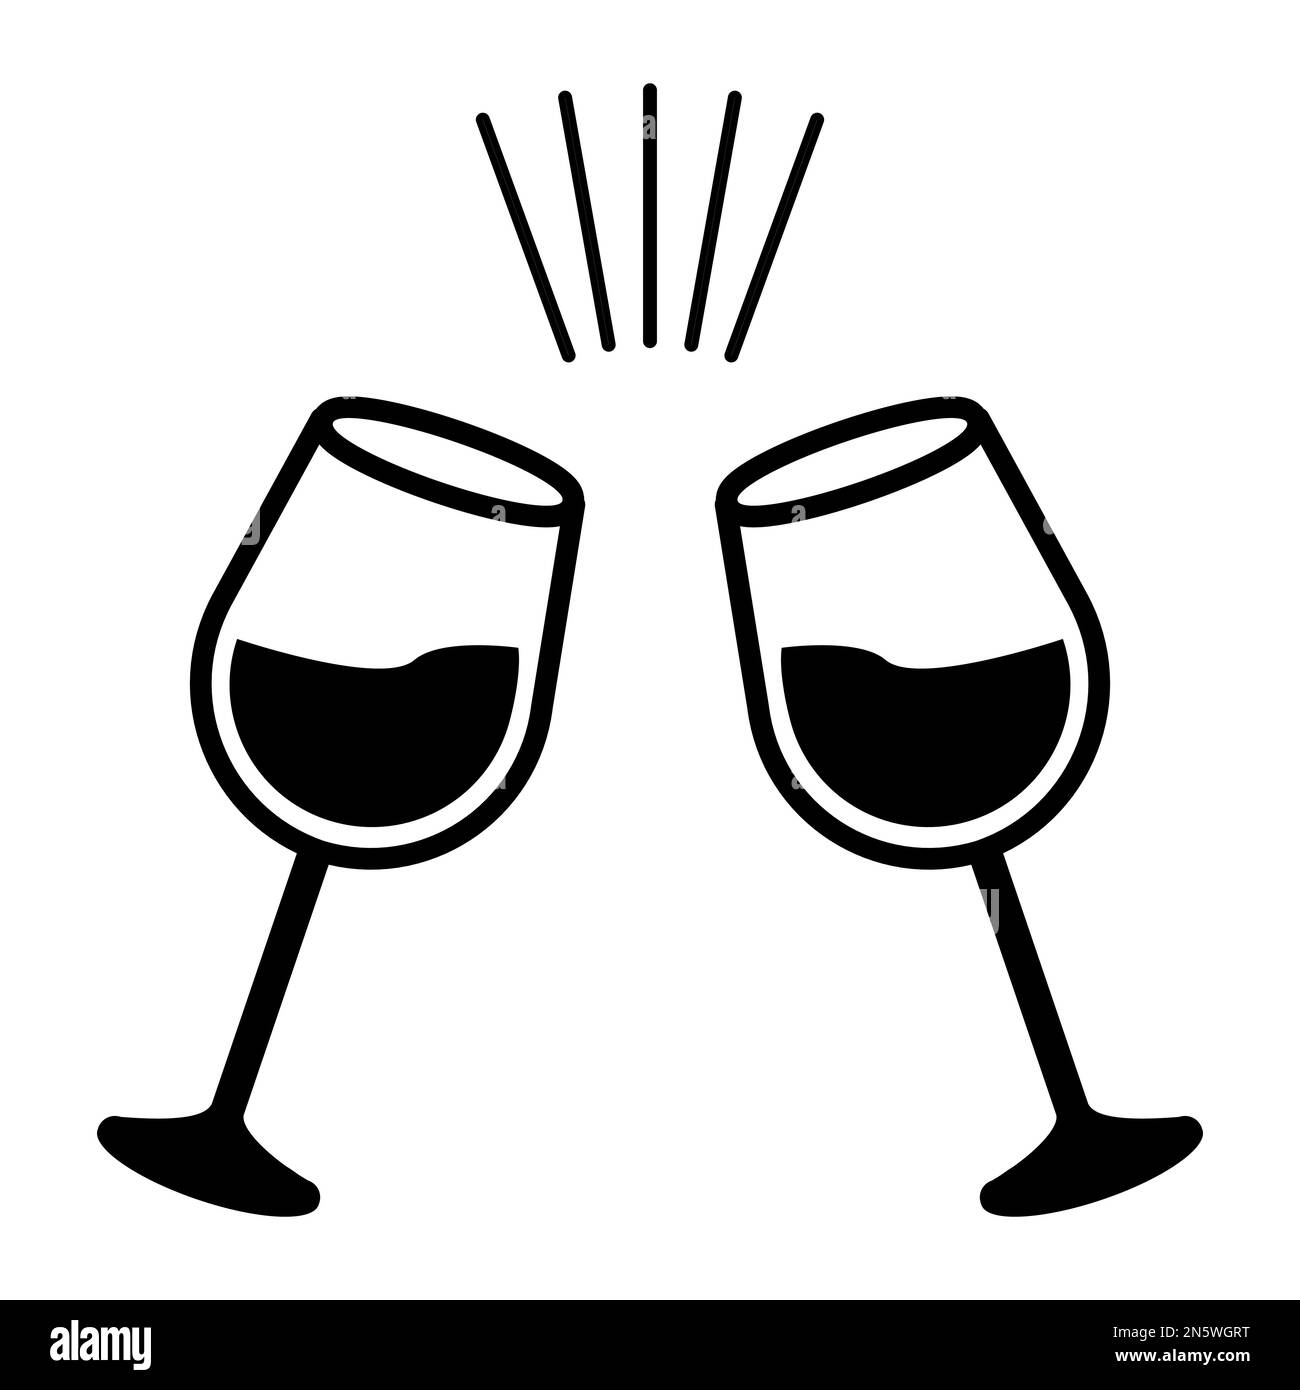 Einfarbige Vektorgrafik von zwei Gläsern Wein, die bei einem Toast oder einer Feier miteinander verbunden werden Stock Vektor